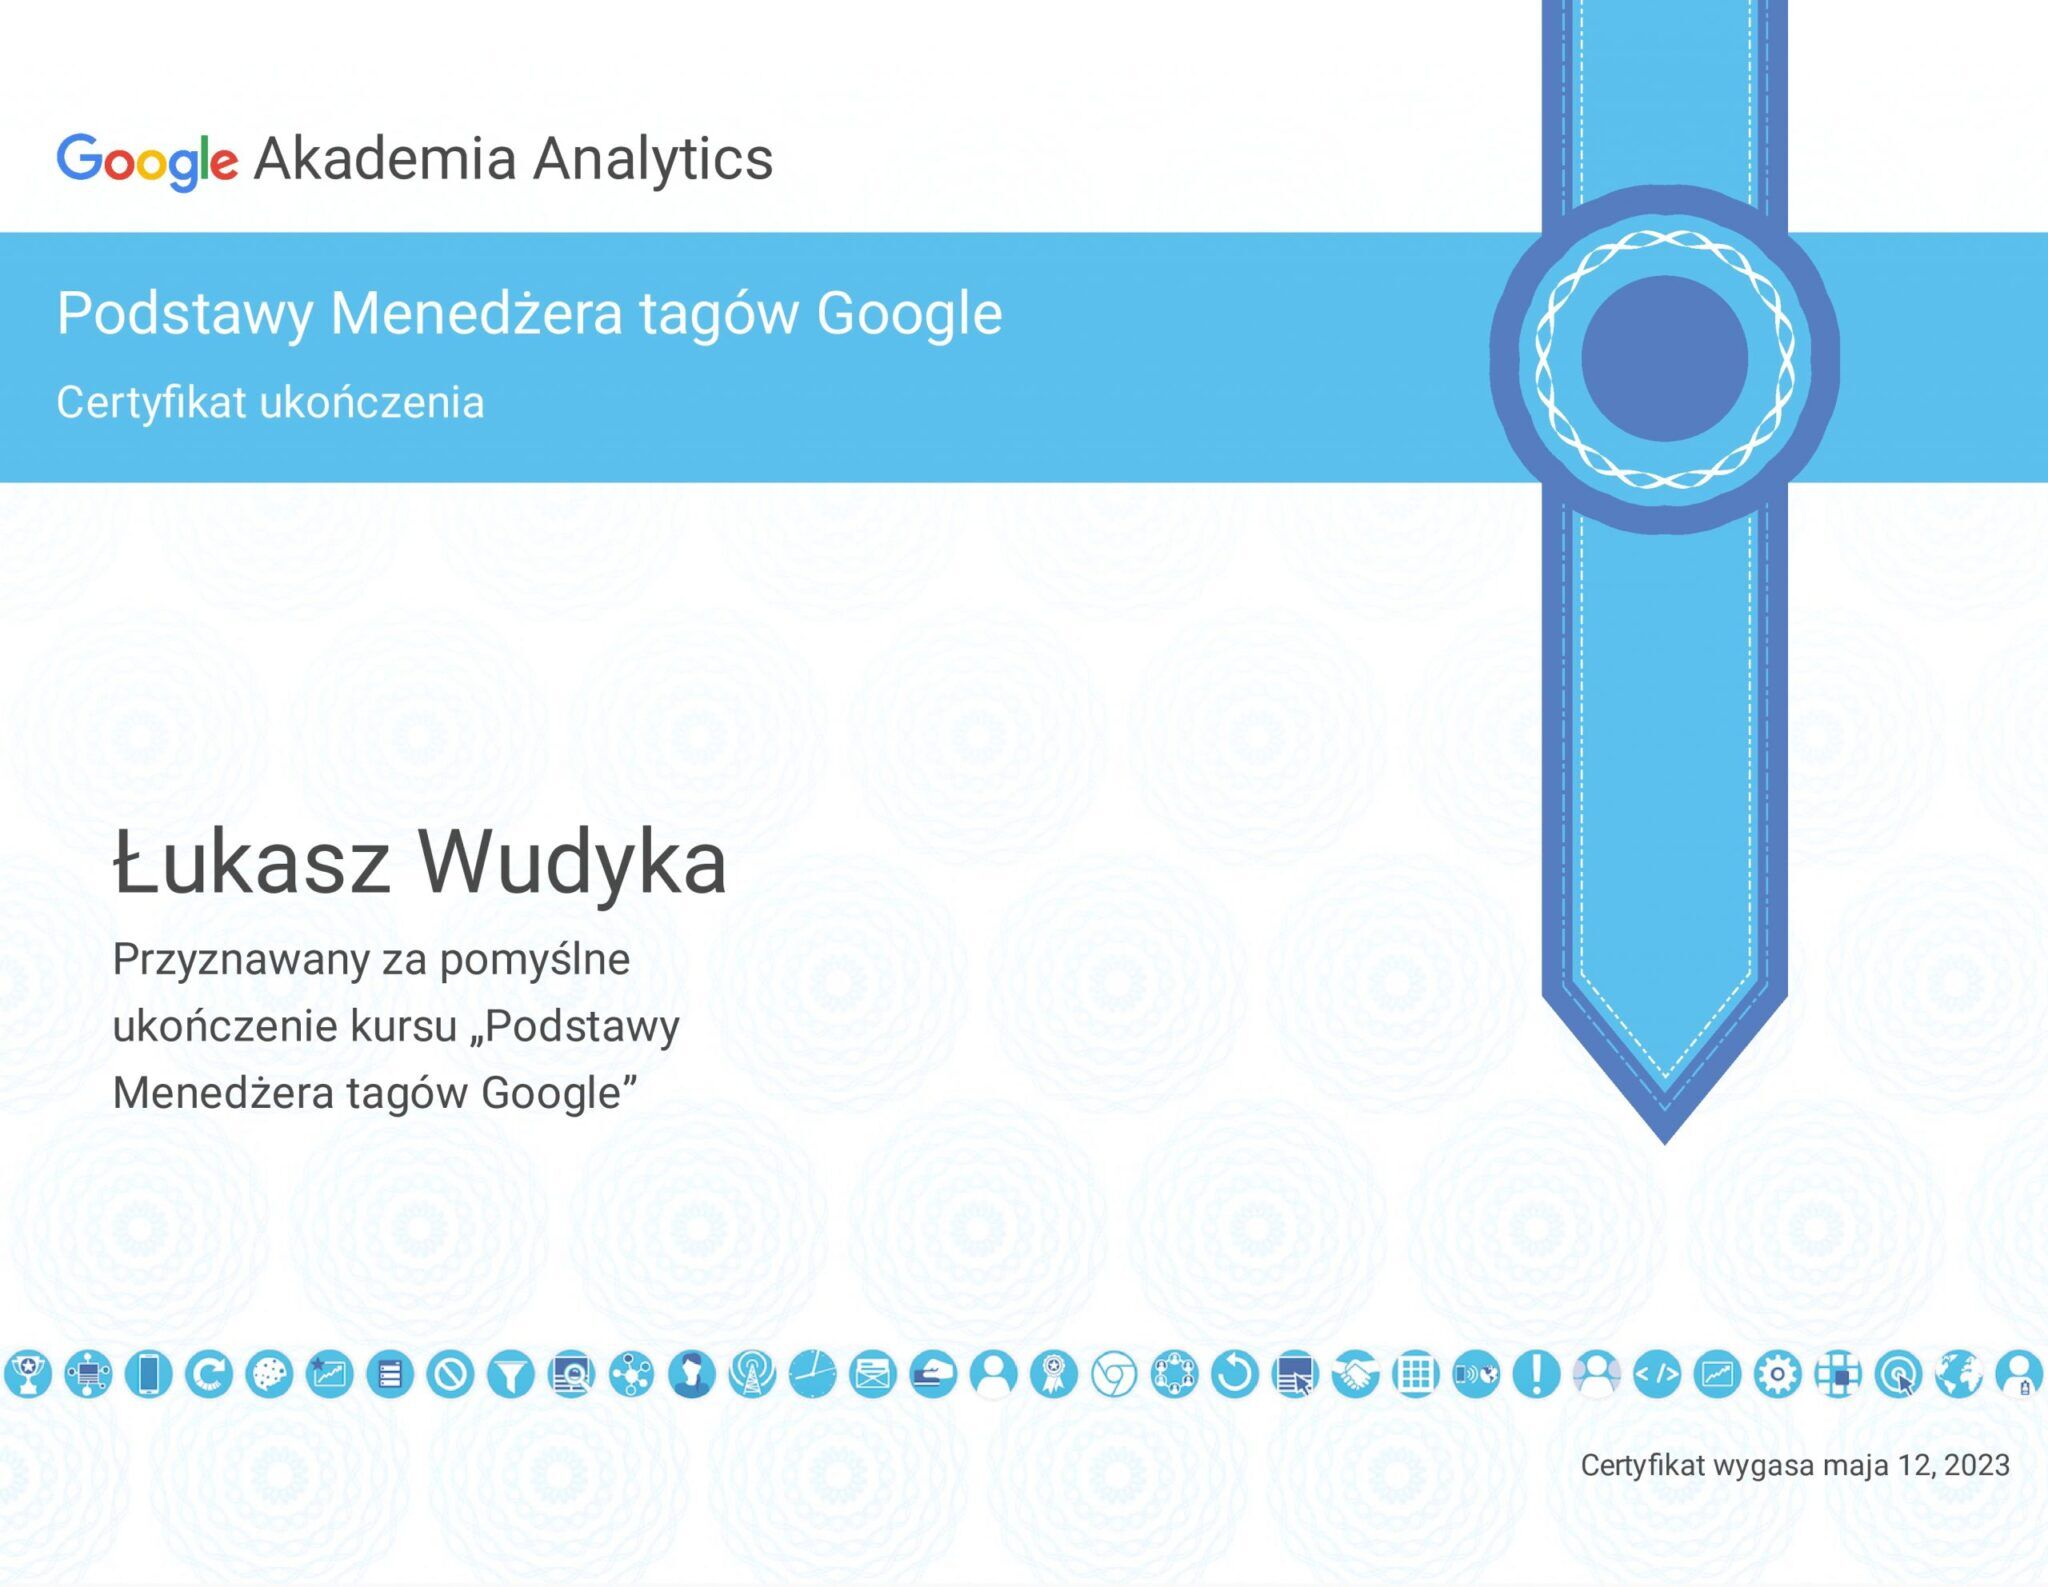 Łukasz Wudyka certyfikat Podstawy Menadżera tagów Google - Akademia Analytics